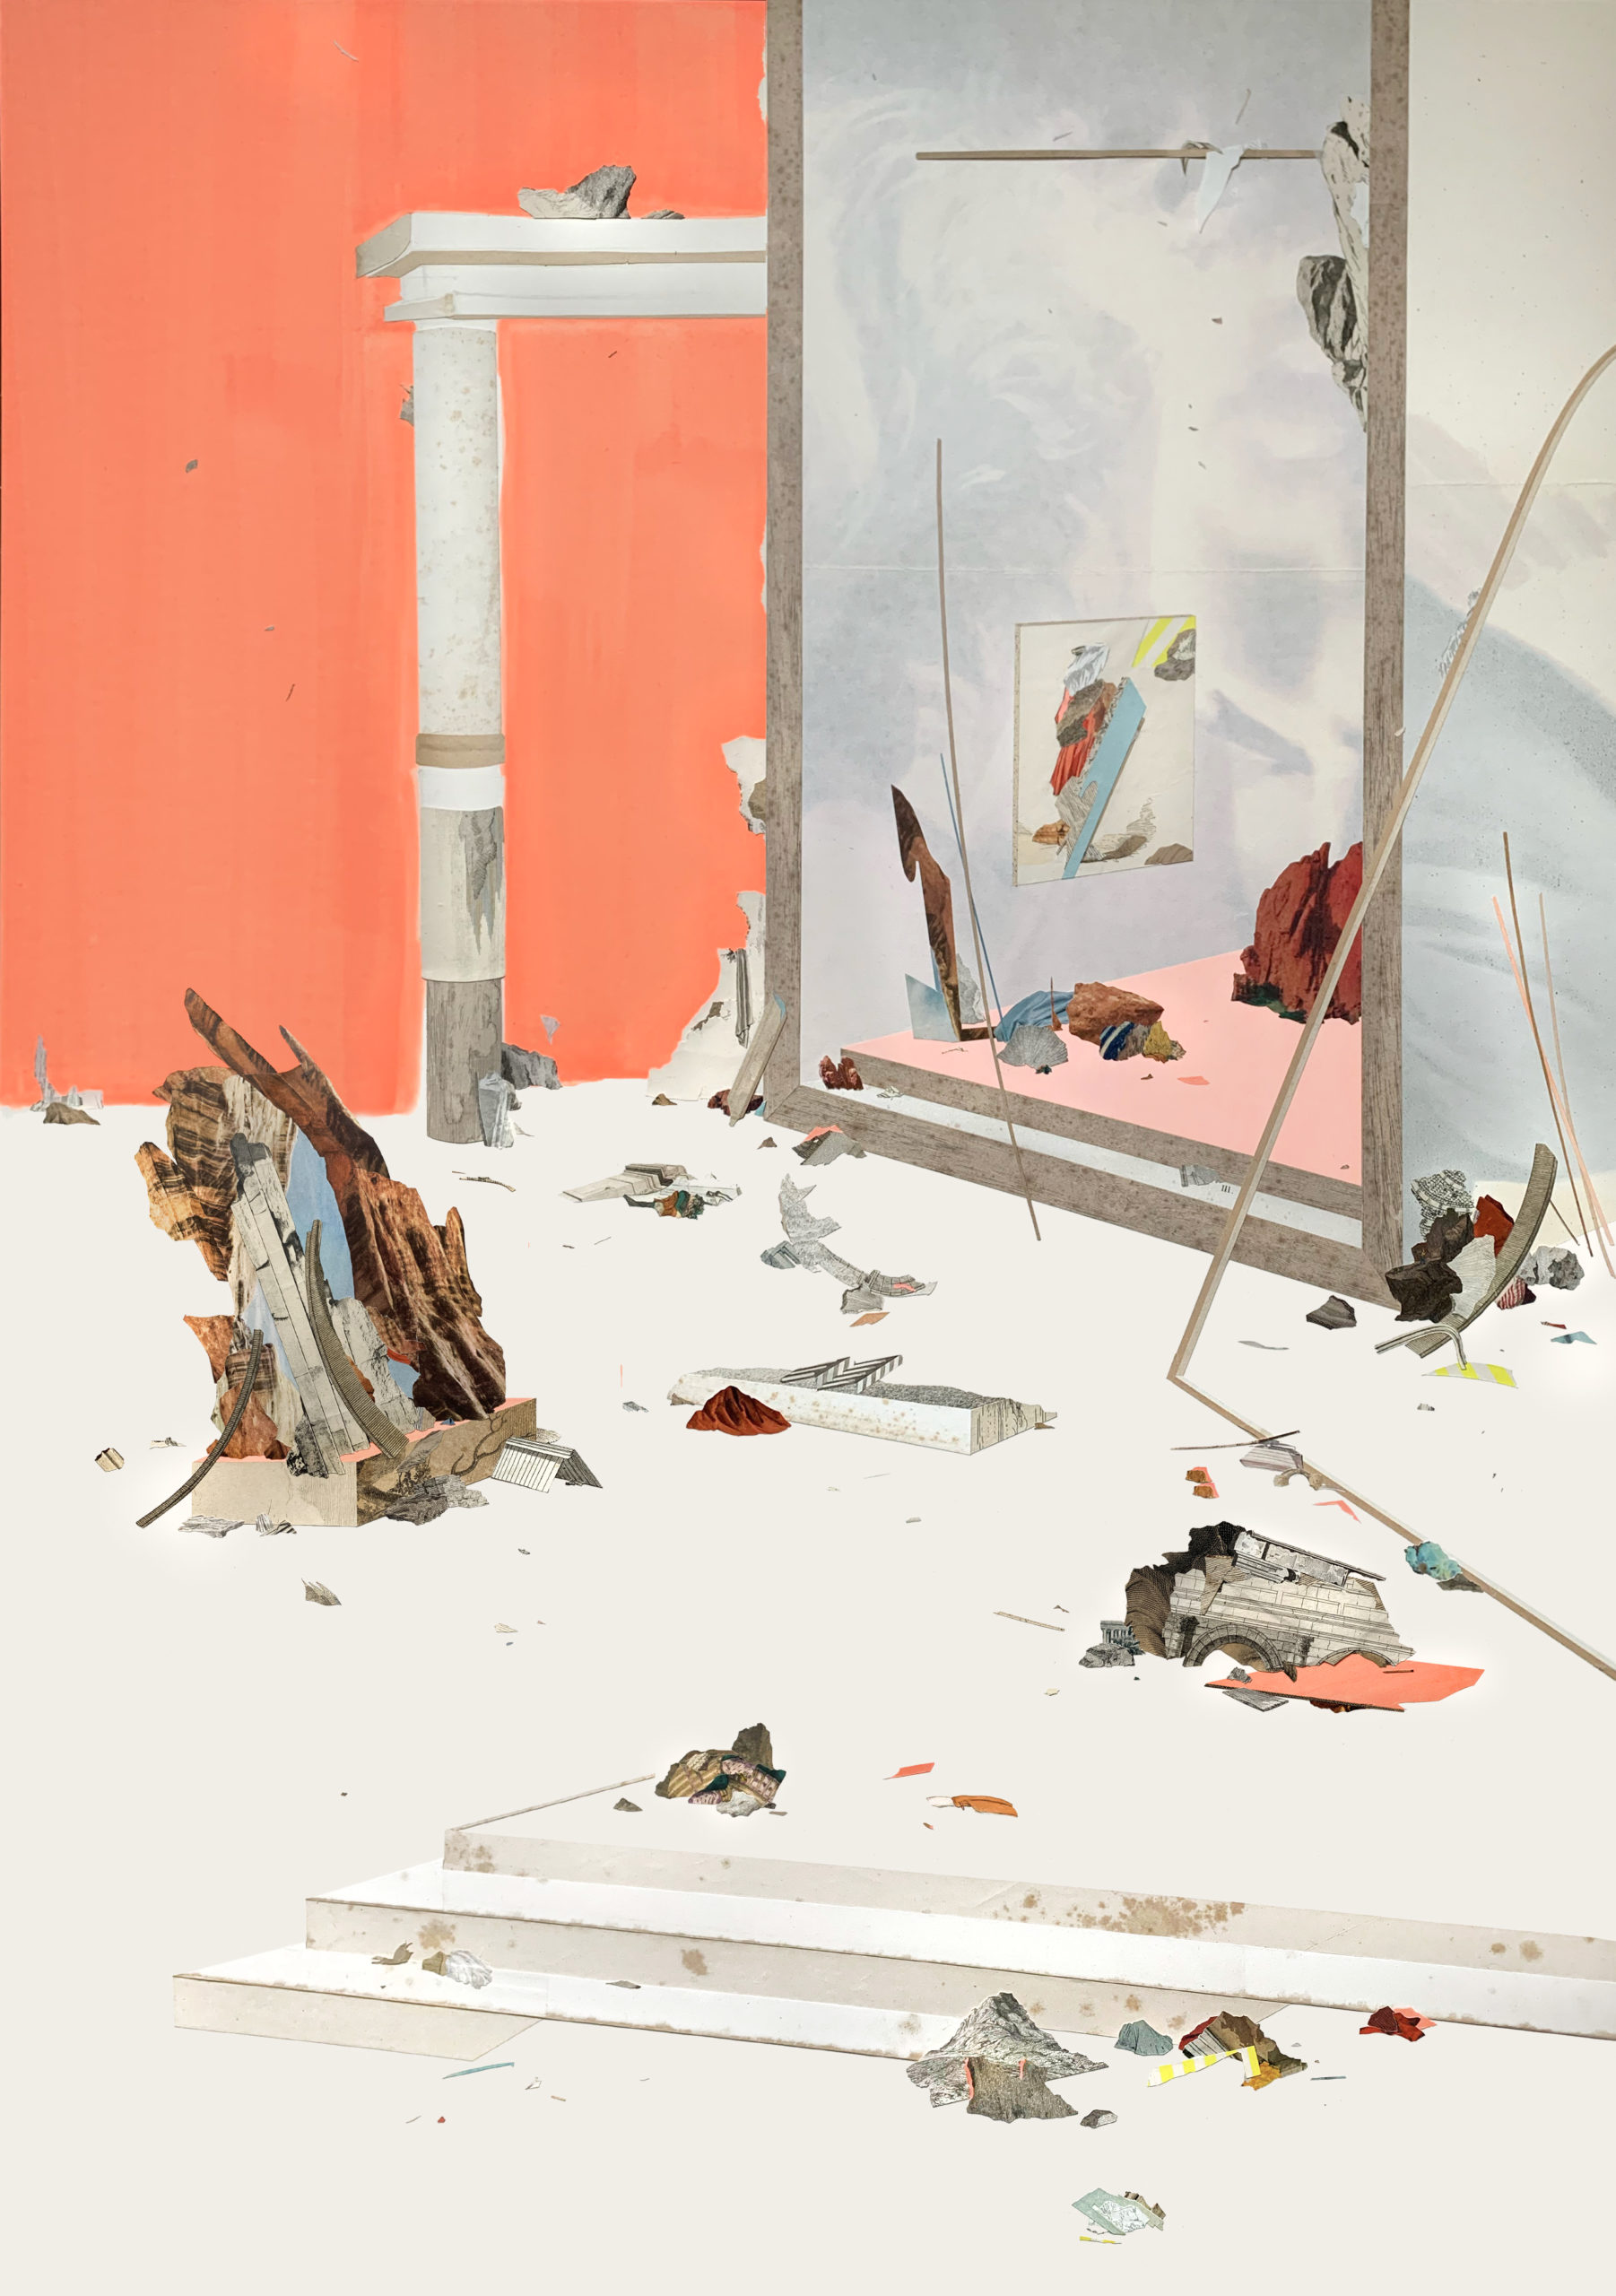 Claire Trotignon, Tiger, Domino, Tomorrow, 2022, dessin, gouache, collages sur papier, 70 x 100 cm © Claire Trotignon, Courtesy Galerie 8+4